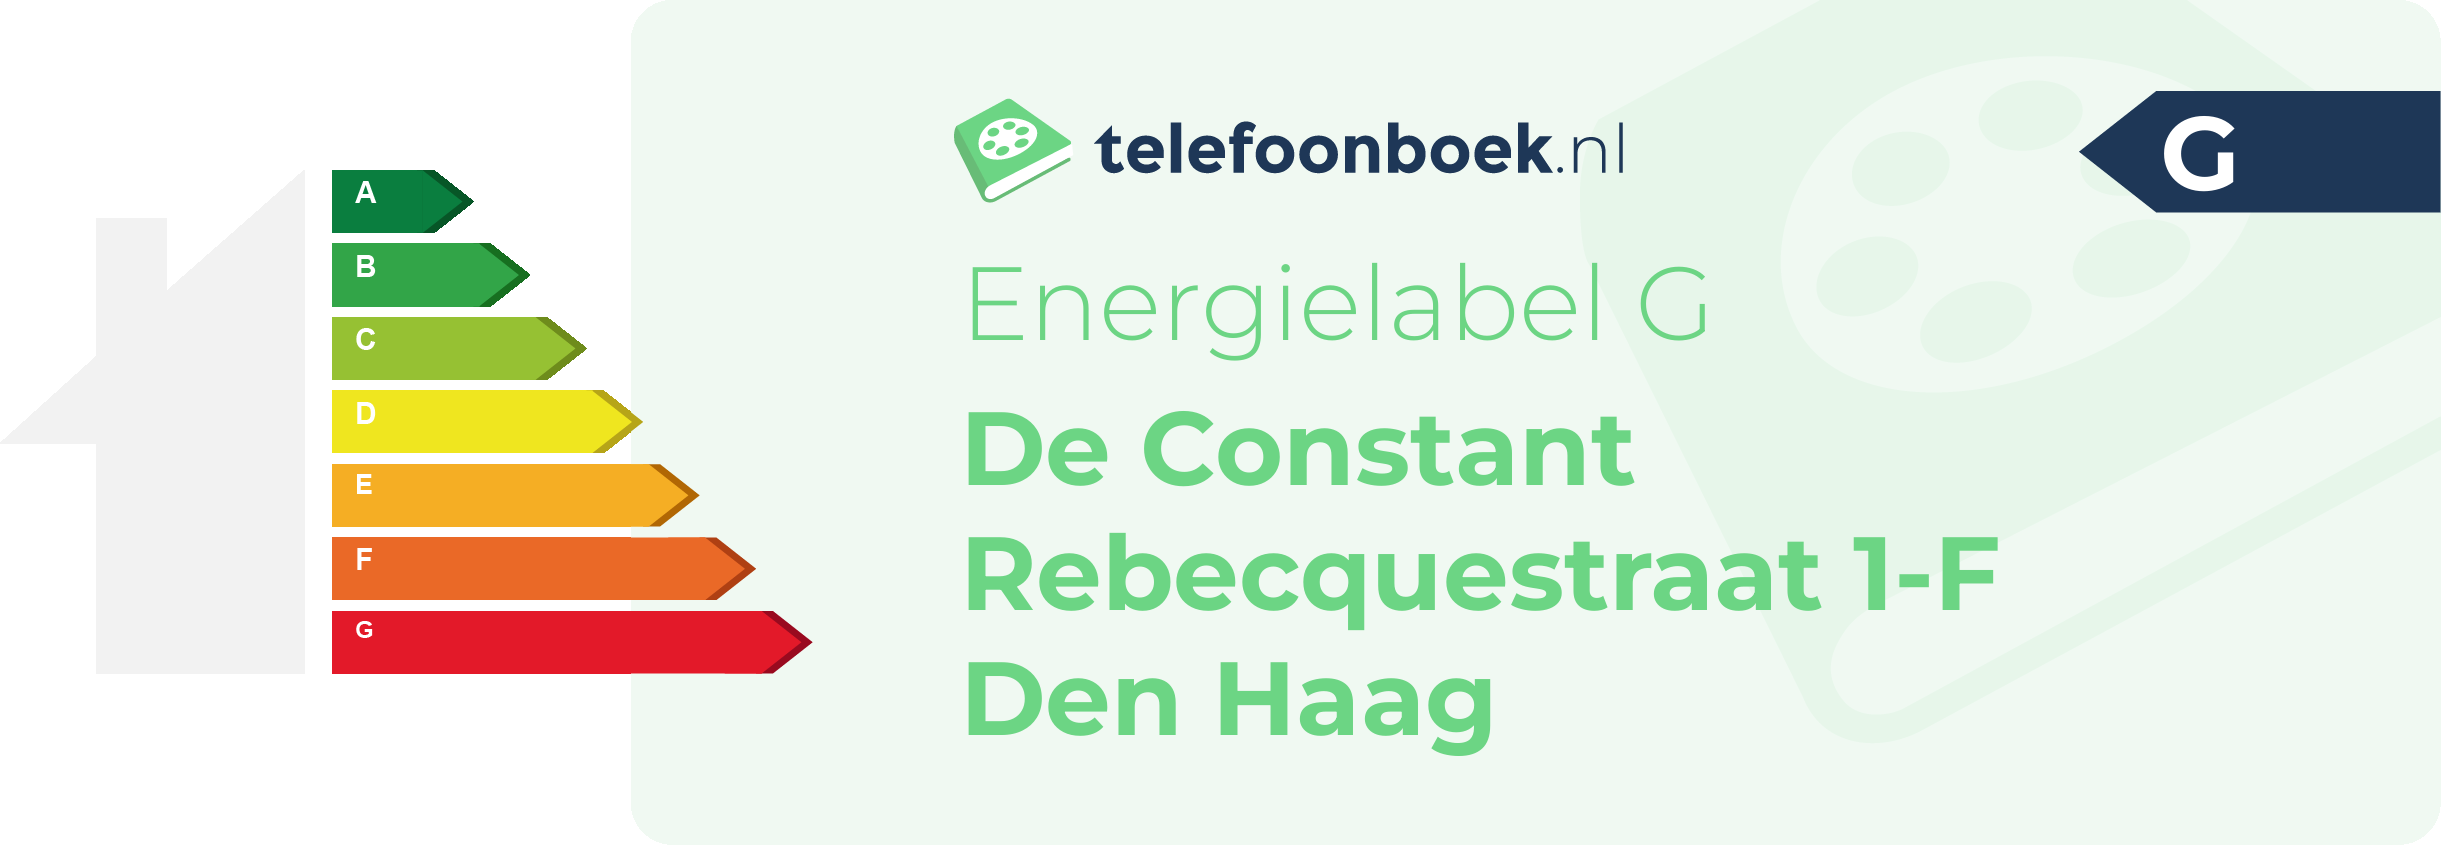 Energielabel De Constant Rebecquestraat 1-F Den Haag